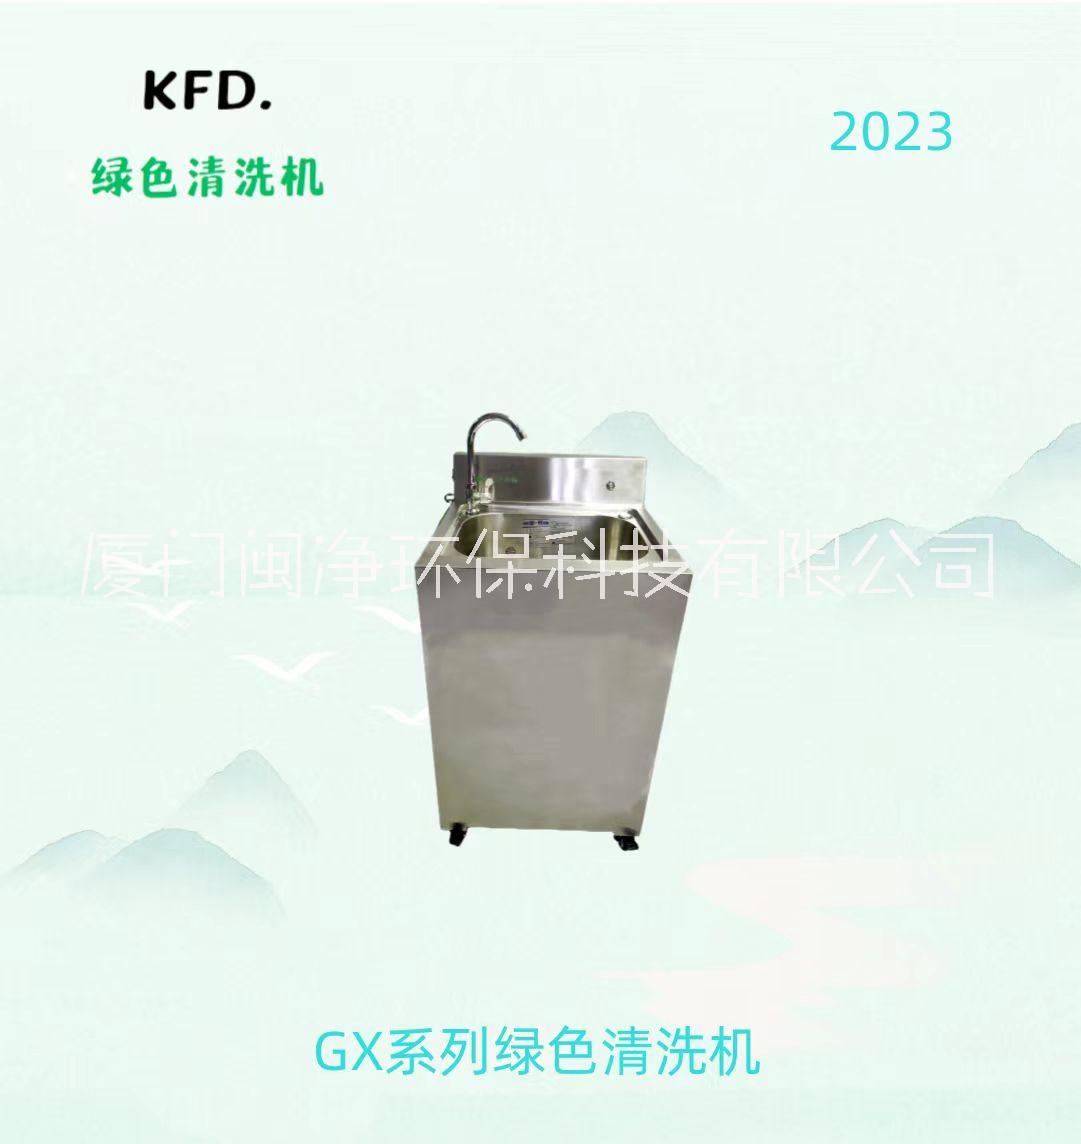 GX清洗机批发